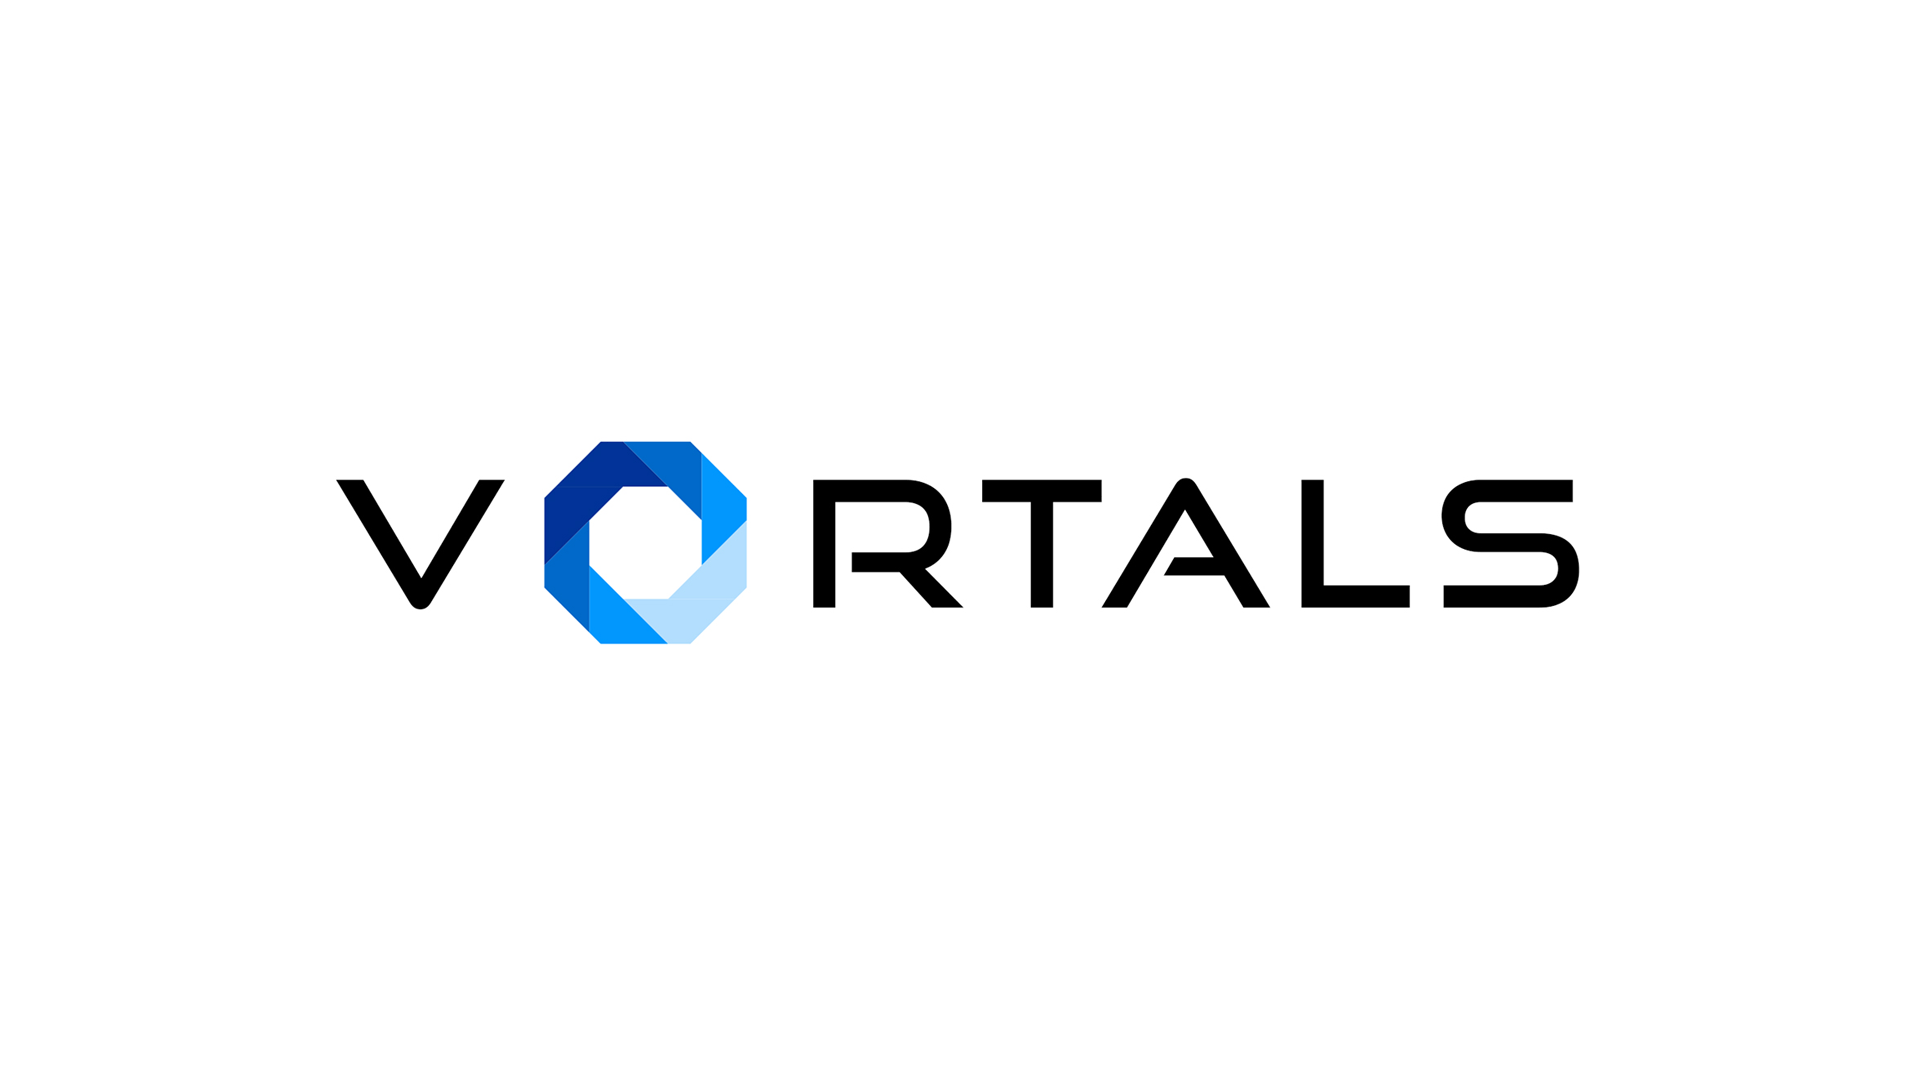 Vortals